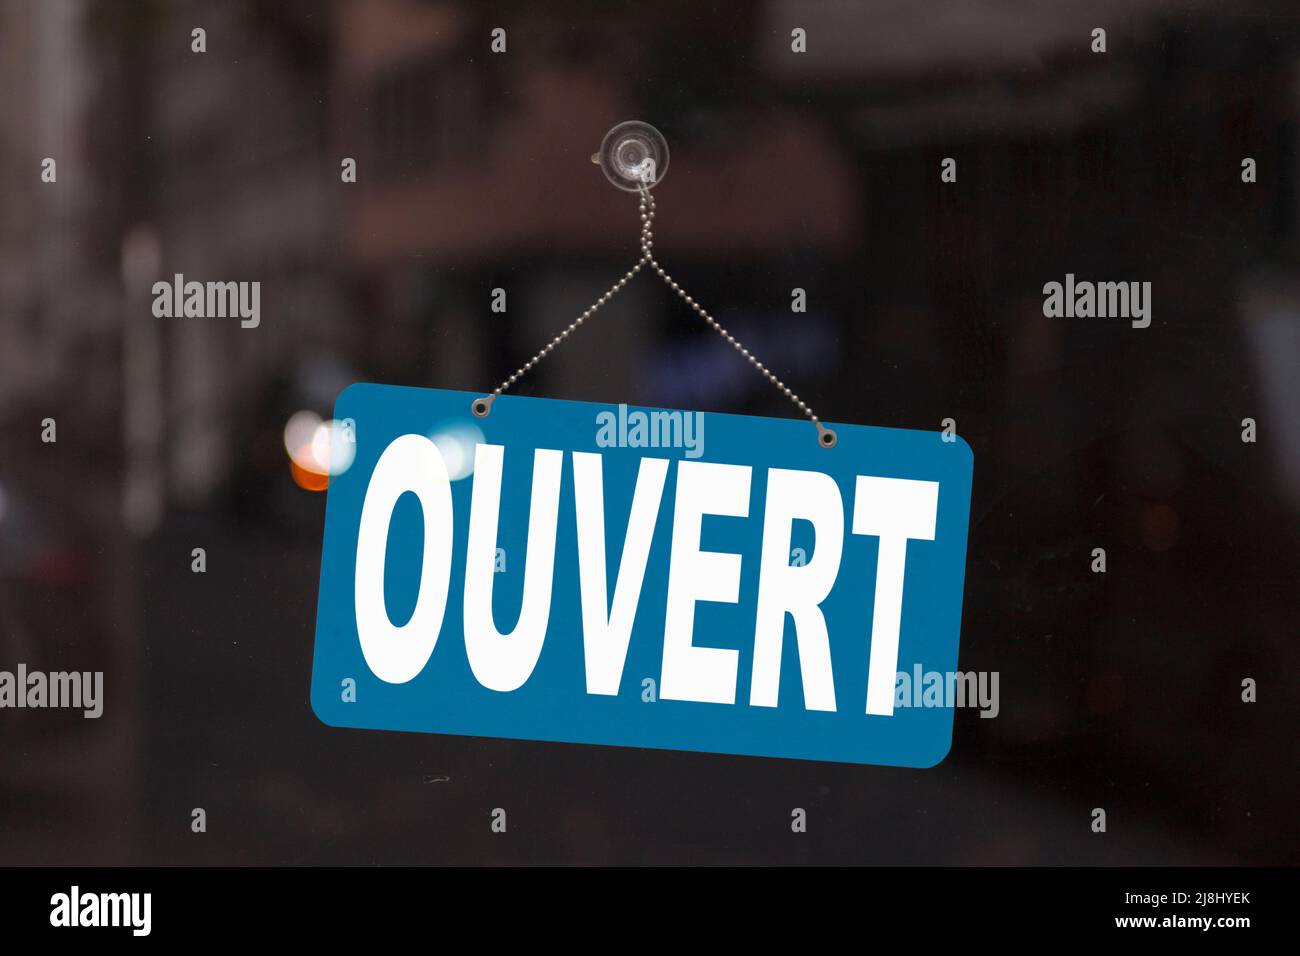 Primo piano su un segno blu nella finestra di un negozio che visualizza il messaggio in francese - Ouvert - significato in inglese - aperto -. Foto Stock